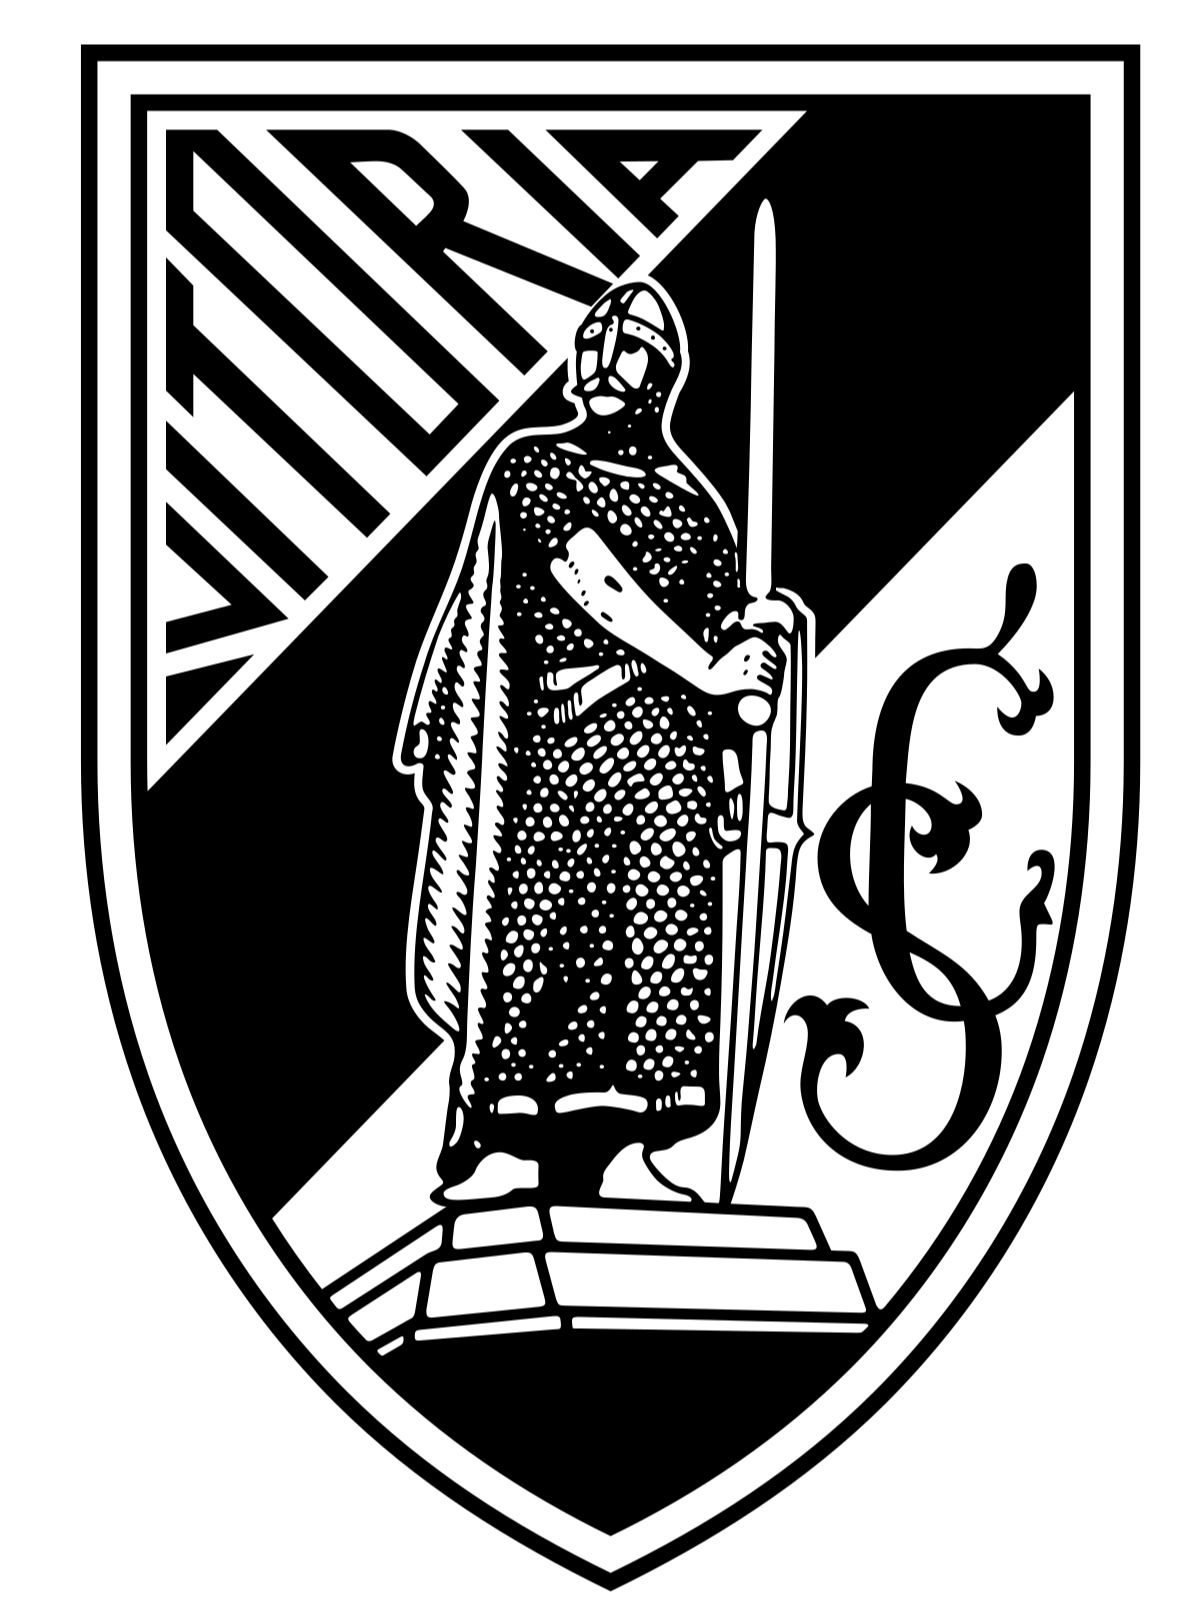 维多利亚女足 logo